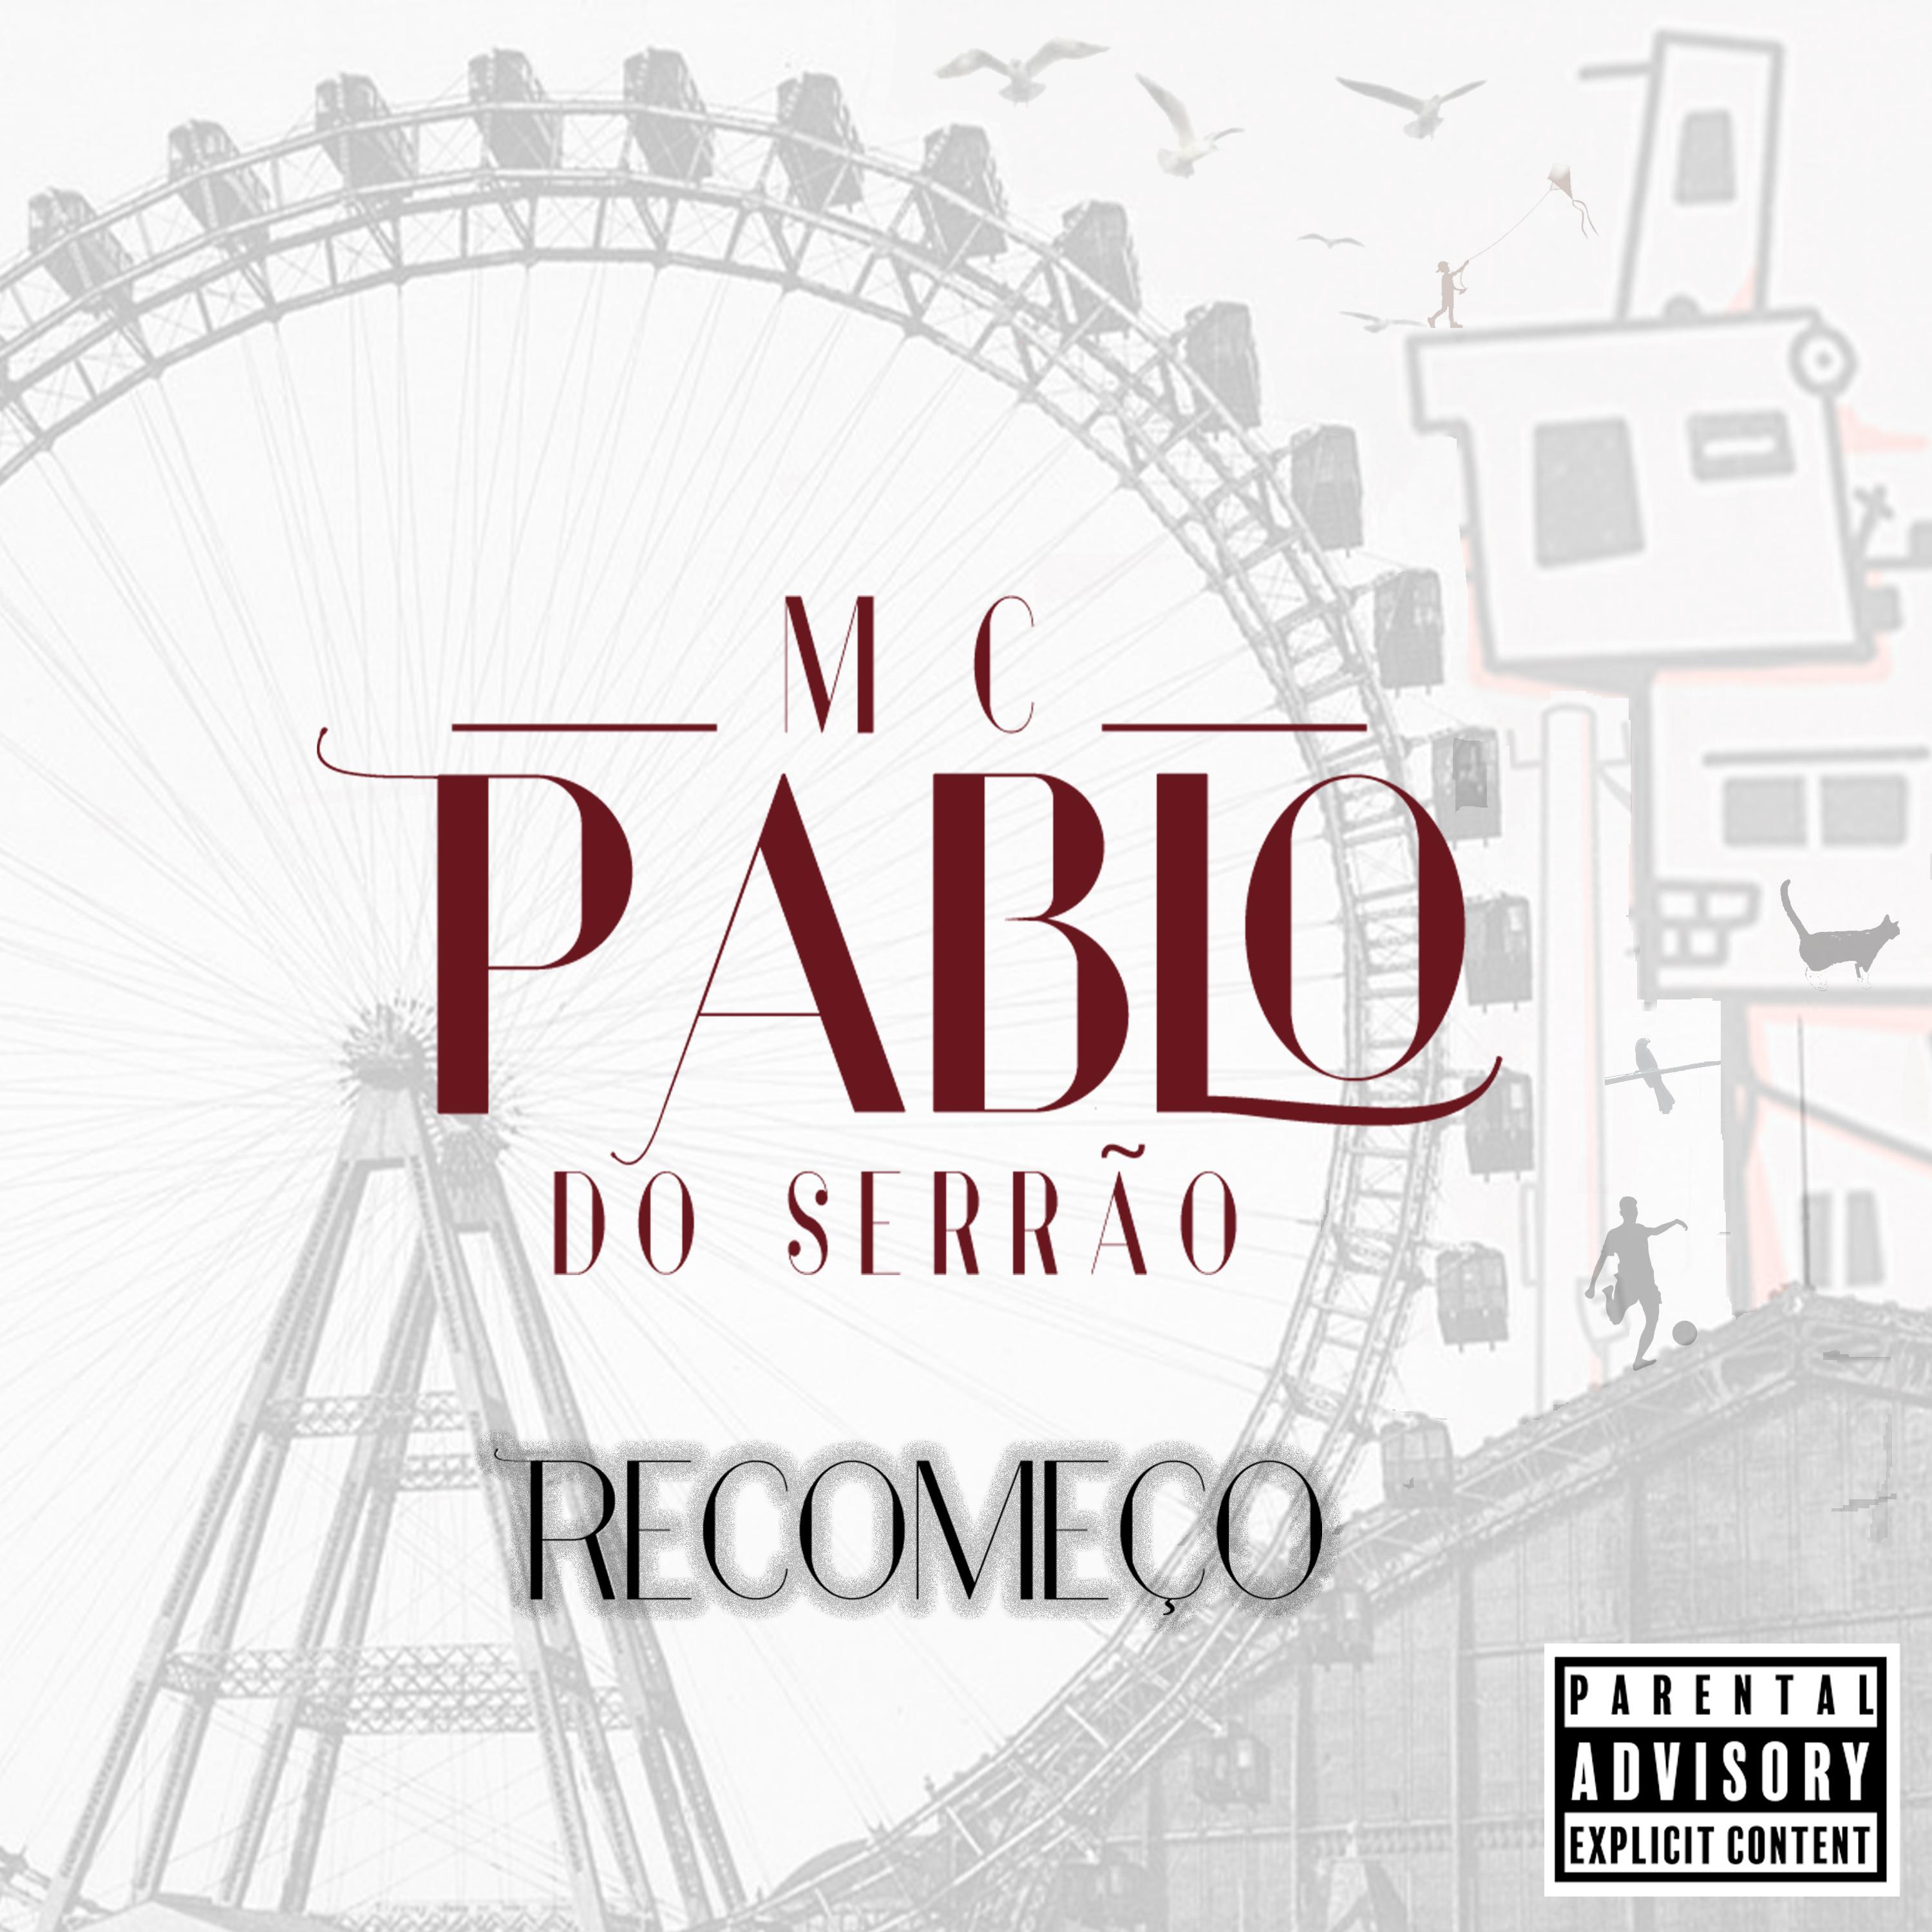 MC Pablo do Serrão - Vida Cara